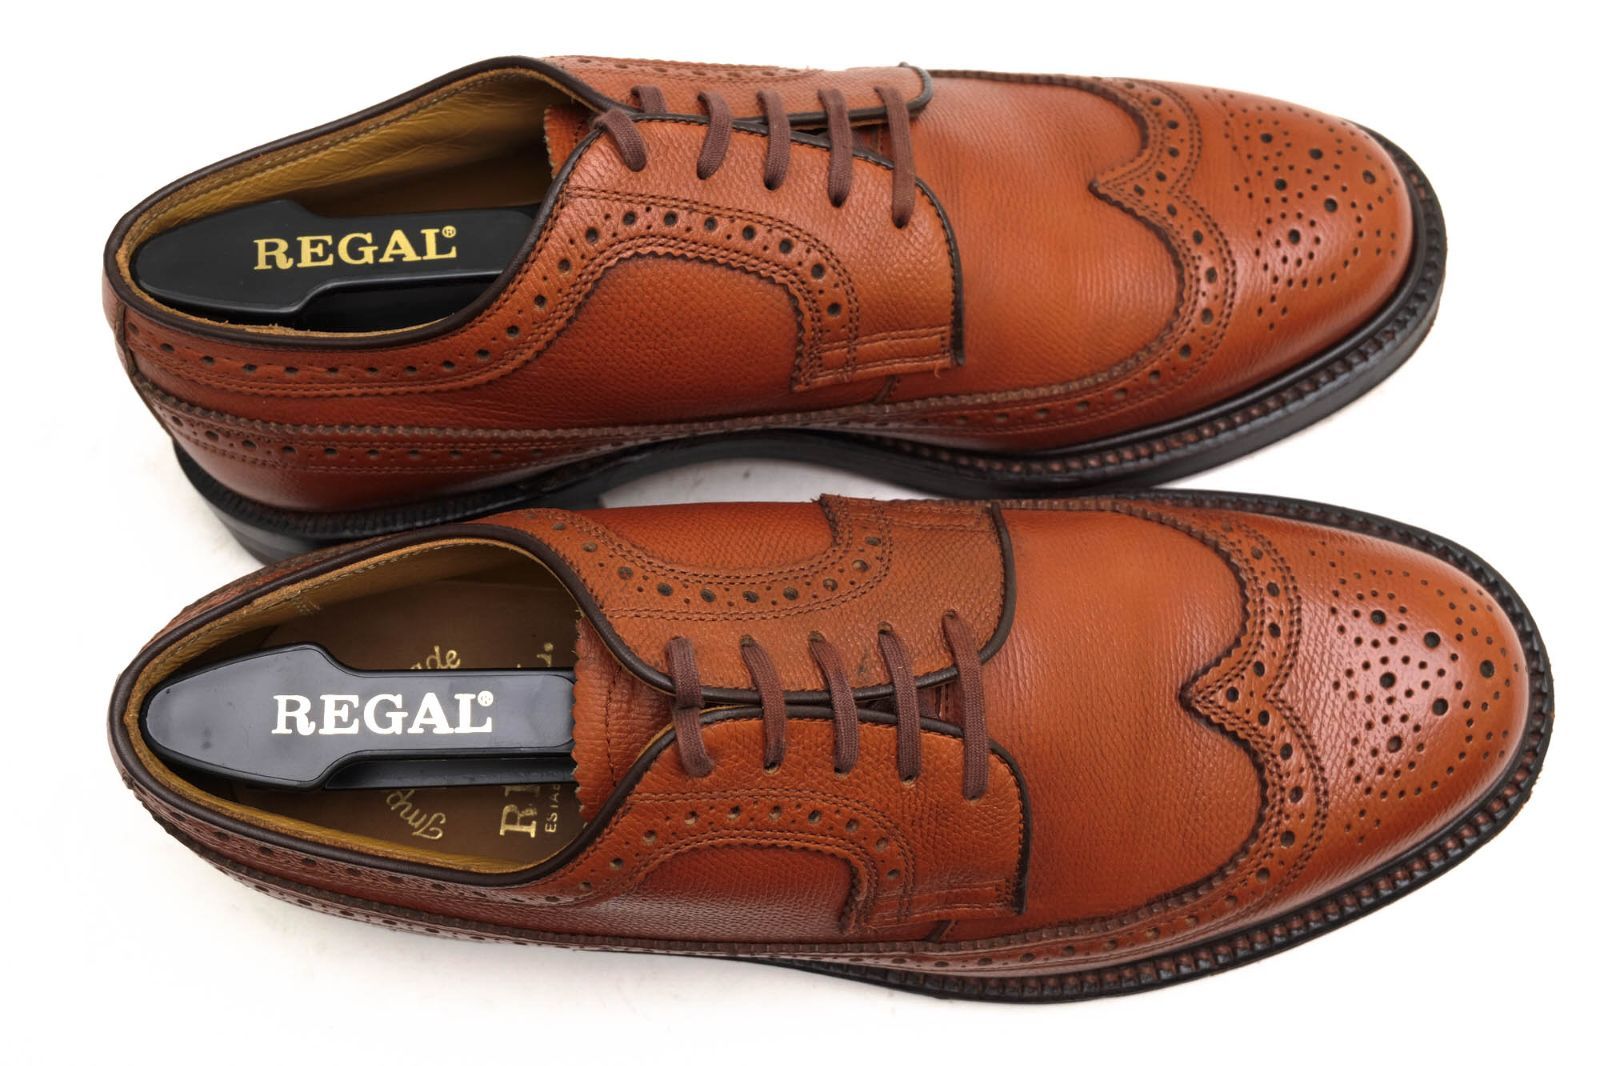 リーガル／REGAL シューズ ビジネスシューズ 靴 ビジネス メンズ 男性 男性用レザー 革 本革 ブラウン 茶 2235 Imperial  Grade インペリアルグレード ロングウイングチップ グッドイヤーウェルト製法 レザーソール